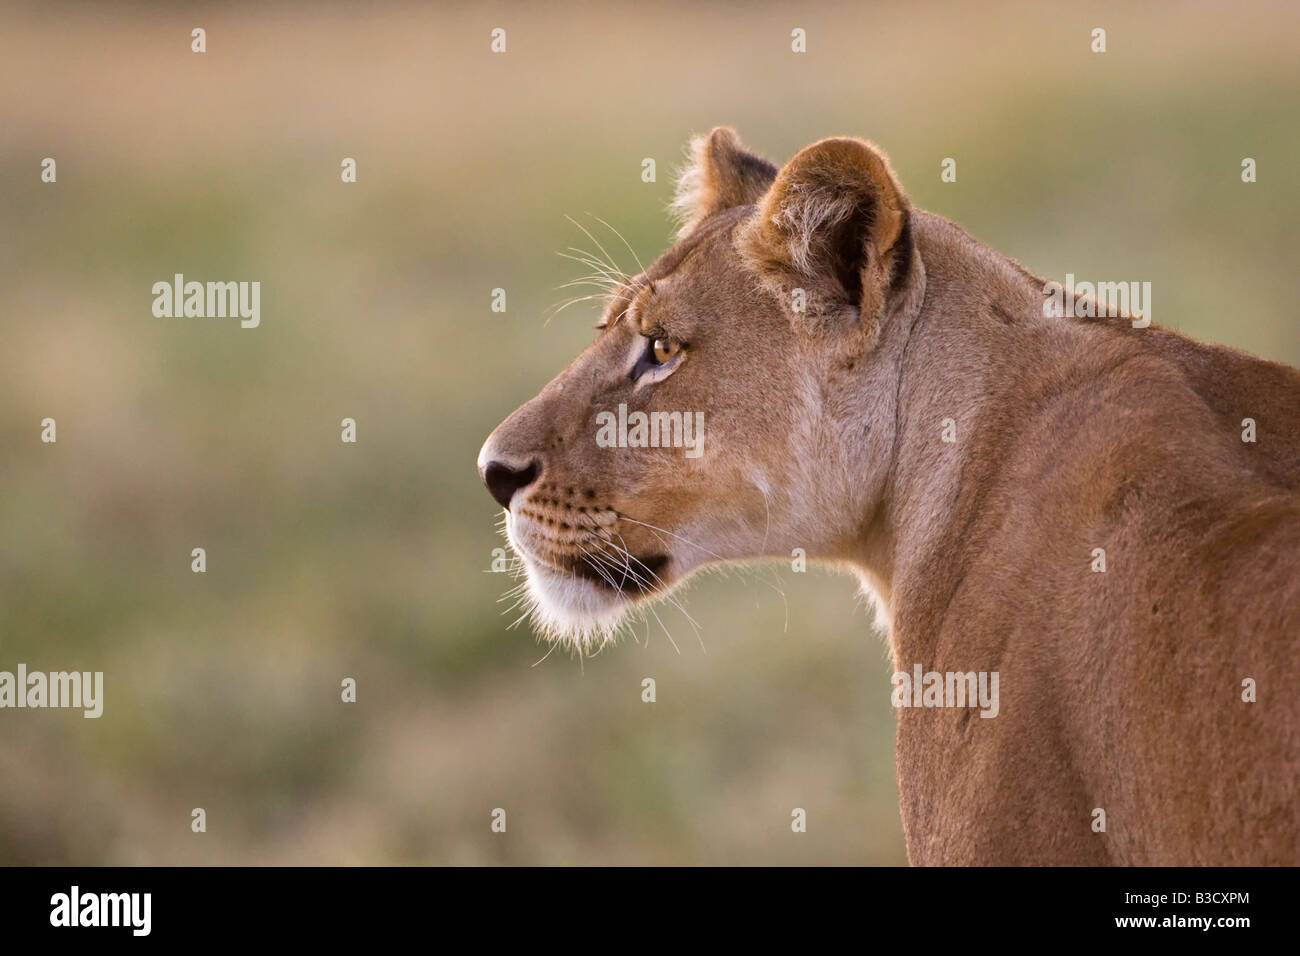 L'Afrique, Botswana, Lioness (Panthera leo) dans l'herbe regardant Banque D'Images